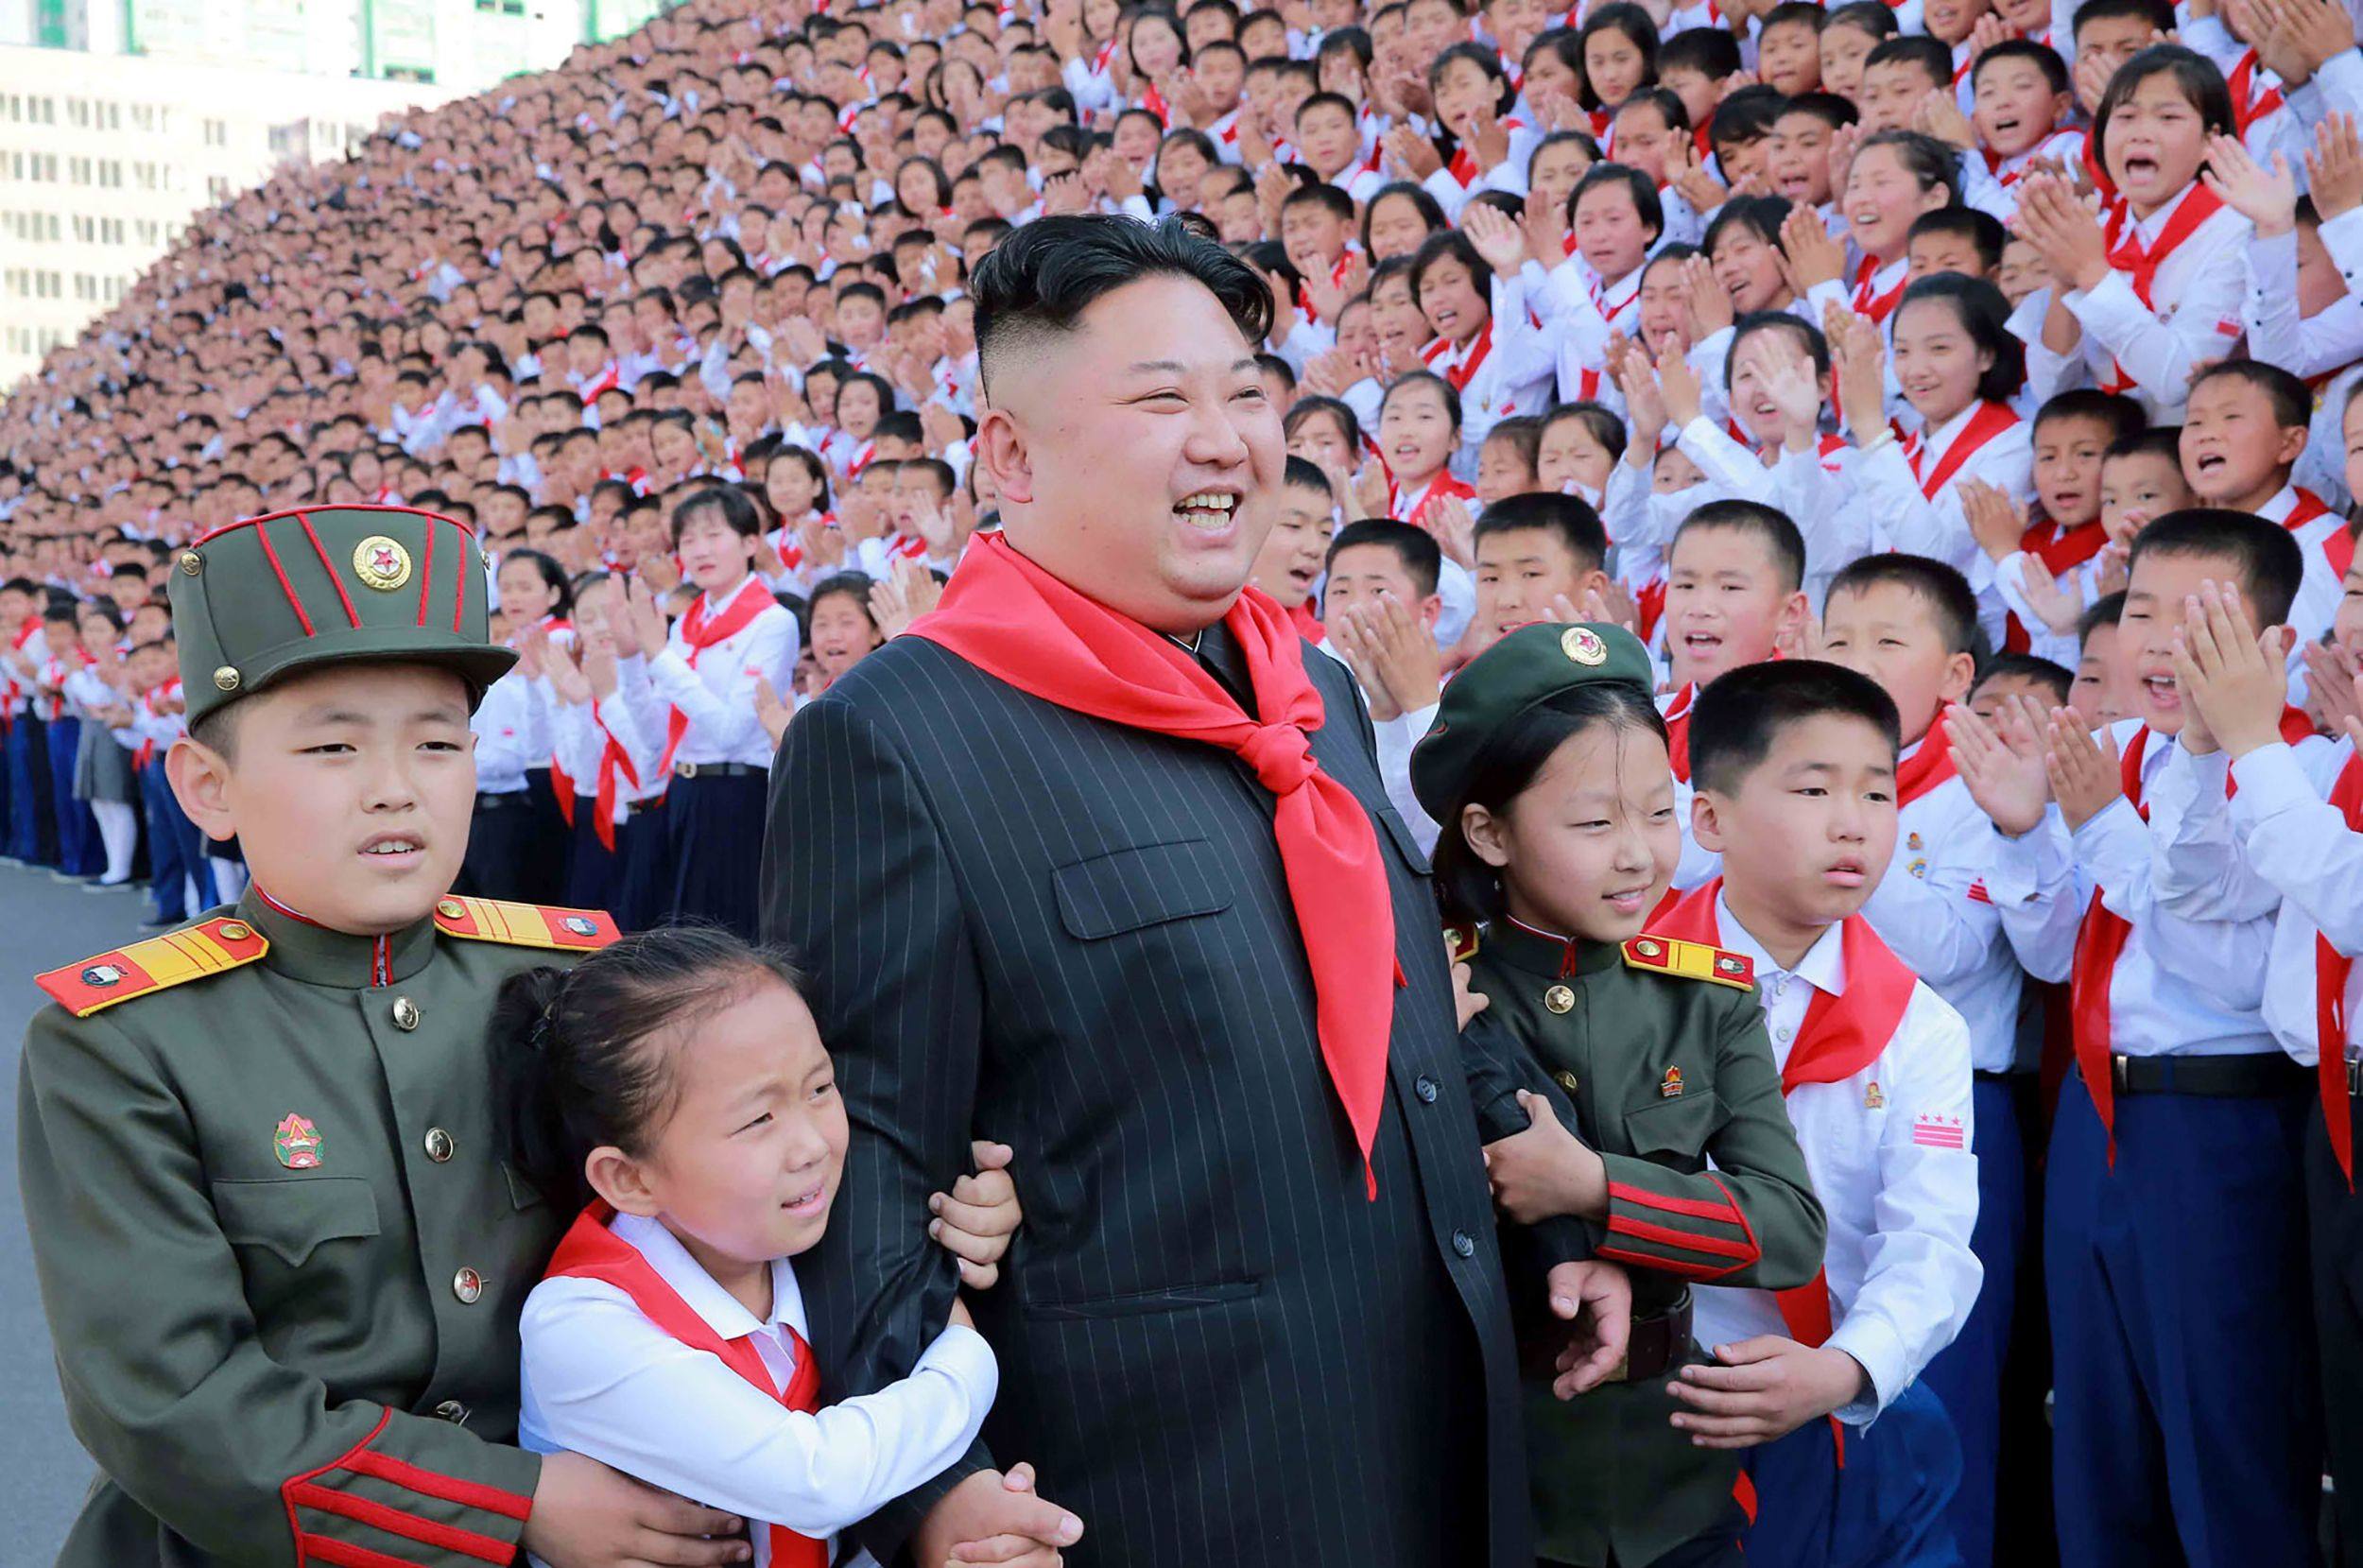 North Korean leader Kim Jong-un attends an event in Pyongyang. Photo: AFP/KCNA